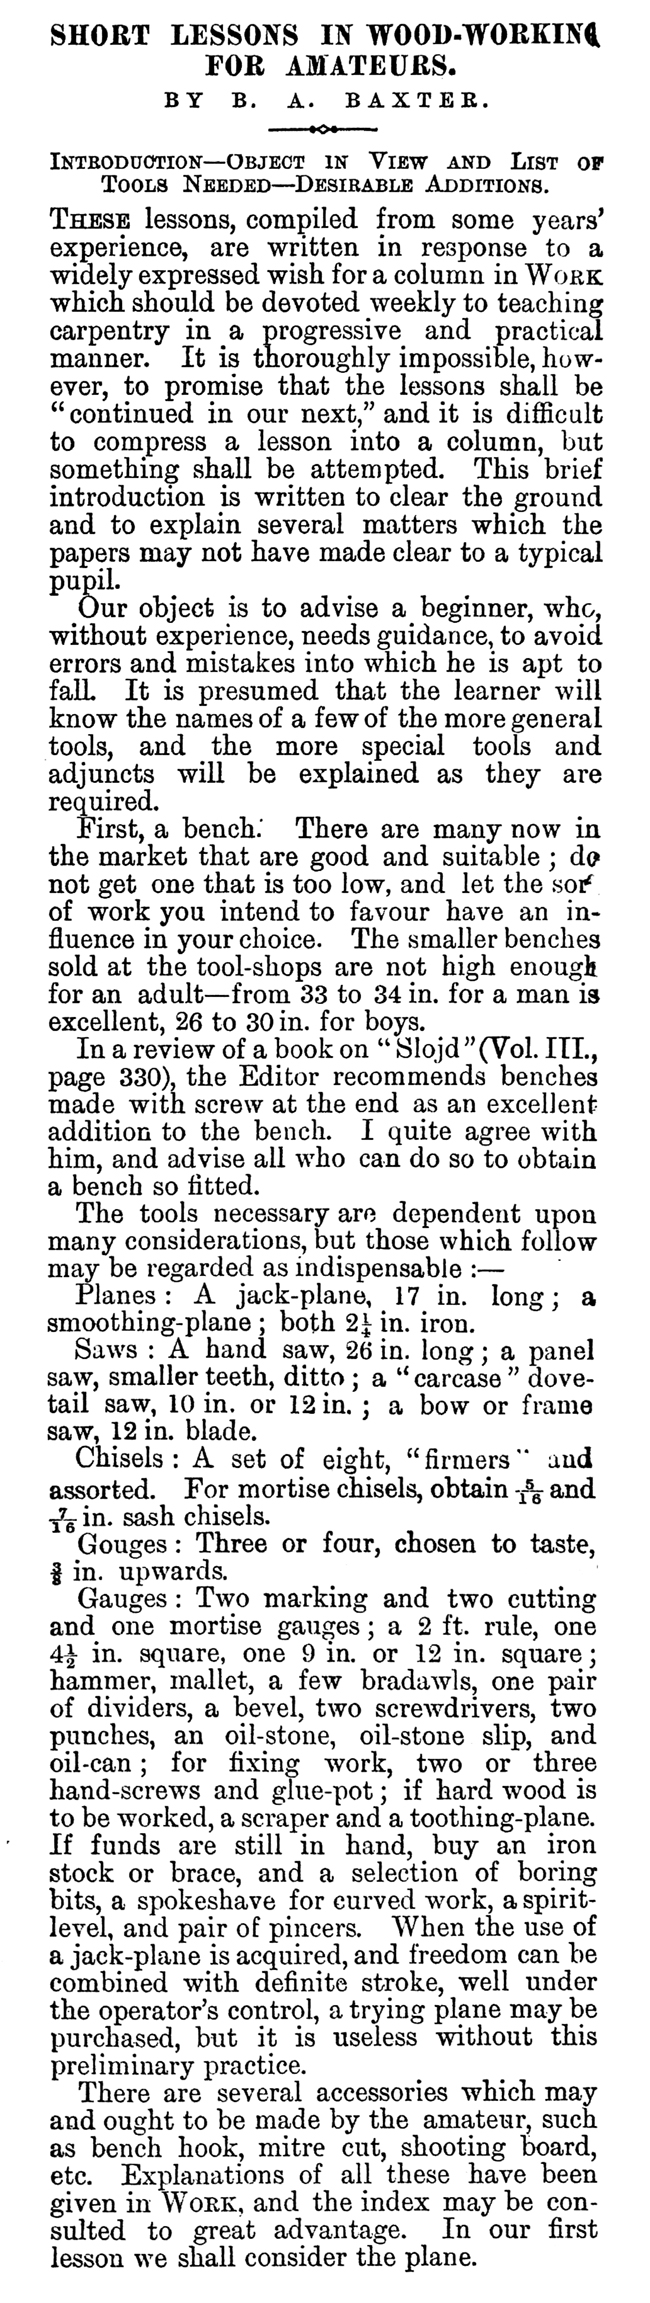 WORK No. 138 - Published November 7, 1891 5